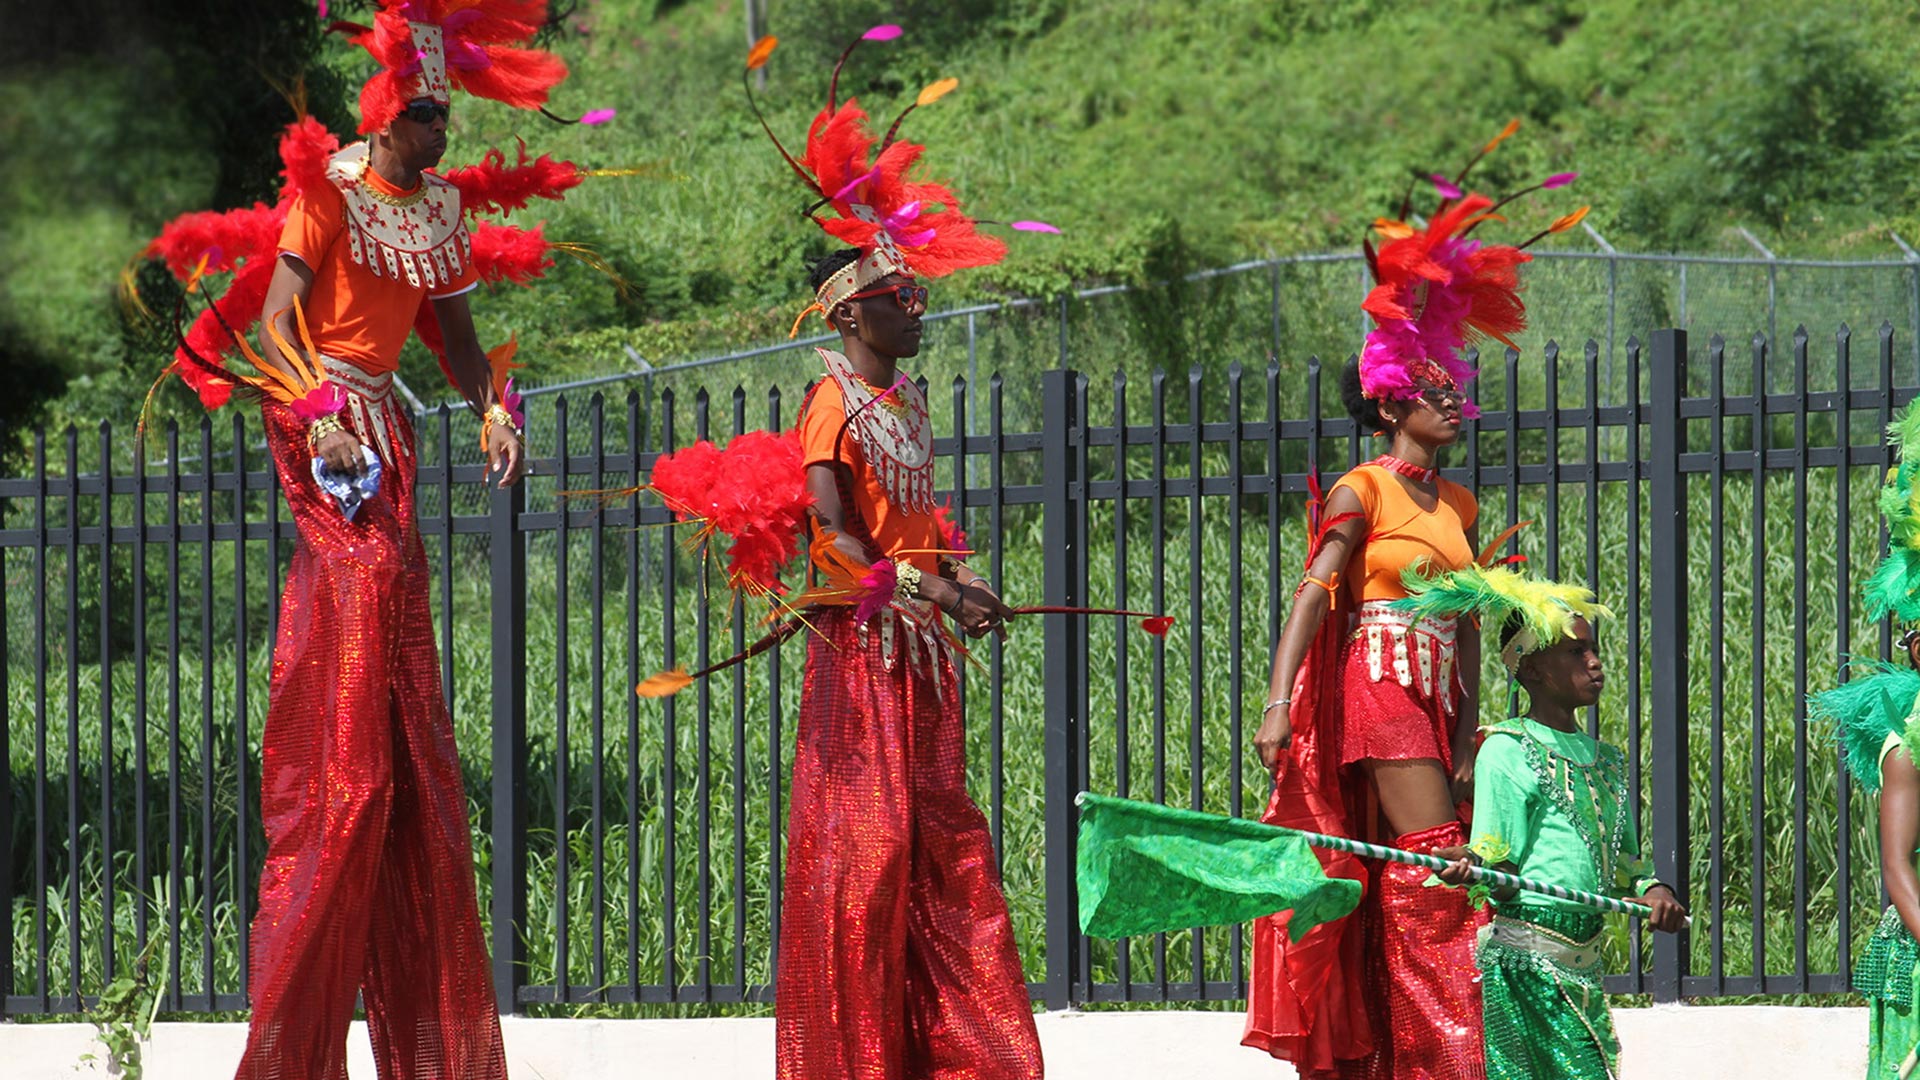 Antigua Carnival revellers on stilts